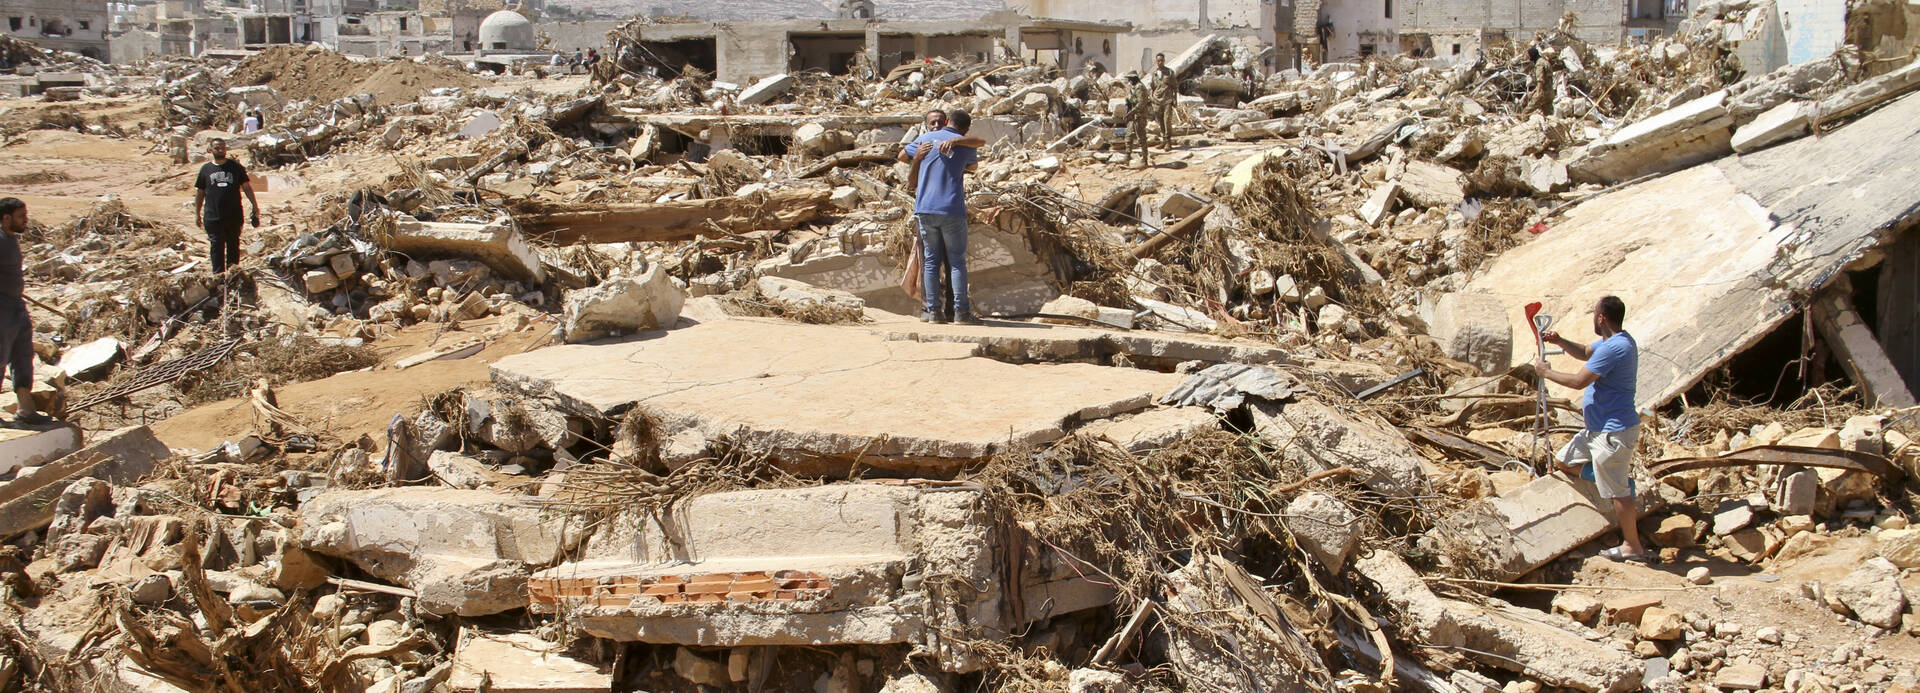 Trümmerberge nach Überschwemmungen in Libyen.